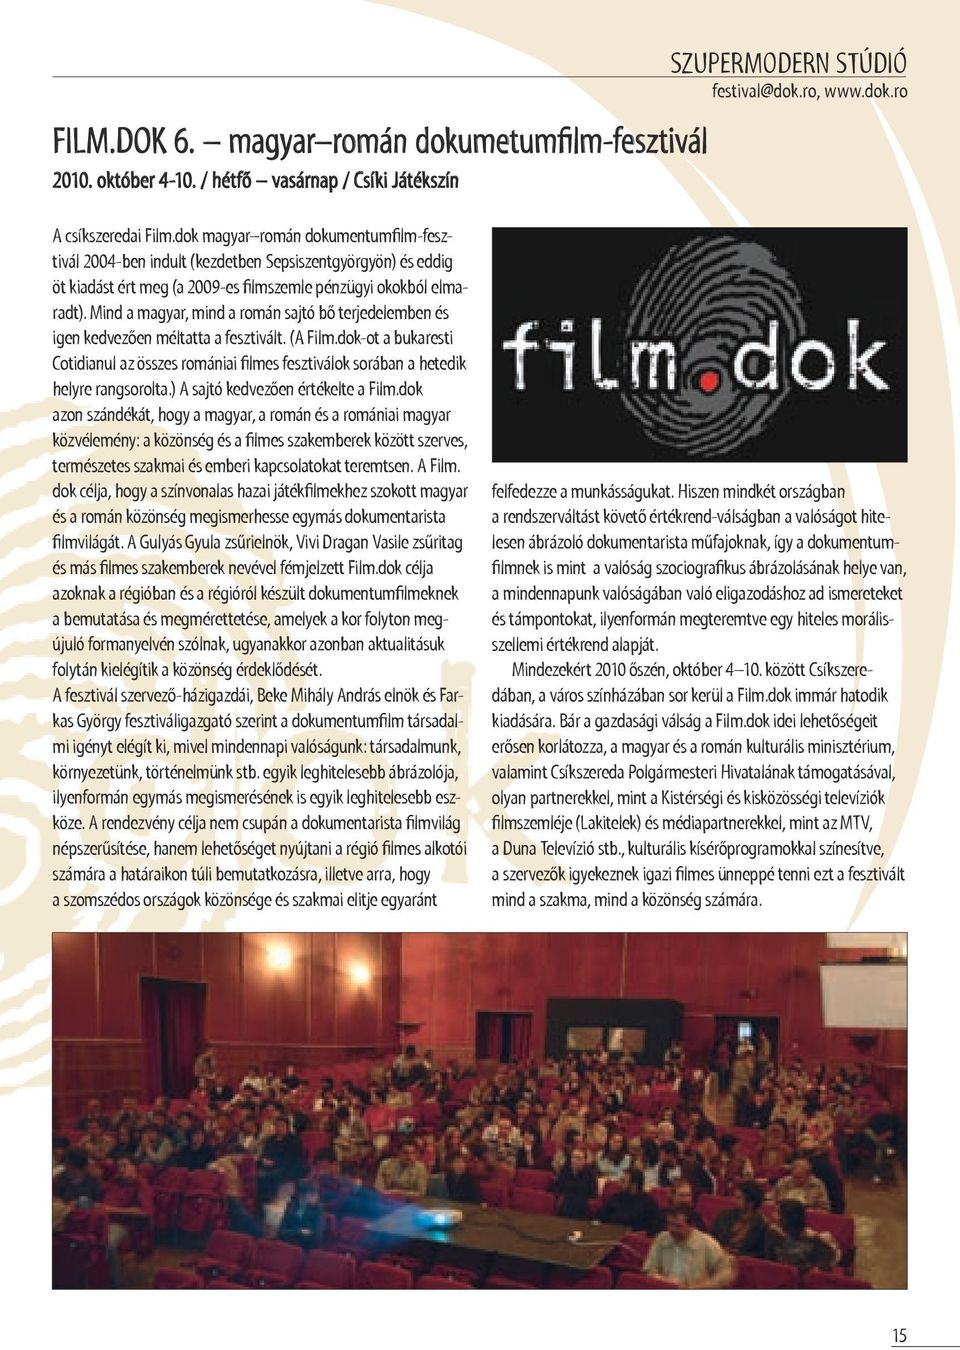 Mind a magyar, mind a román sajtó bő terjedelemben és igen kedvezően méltatta a fesztivált. (a Film.